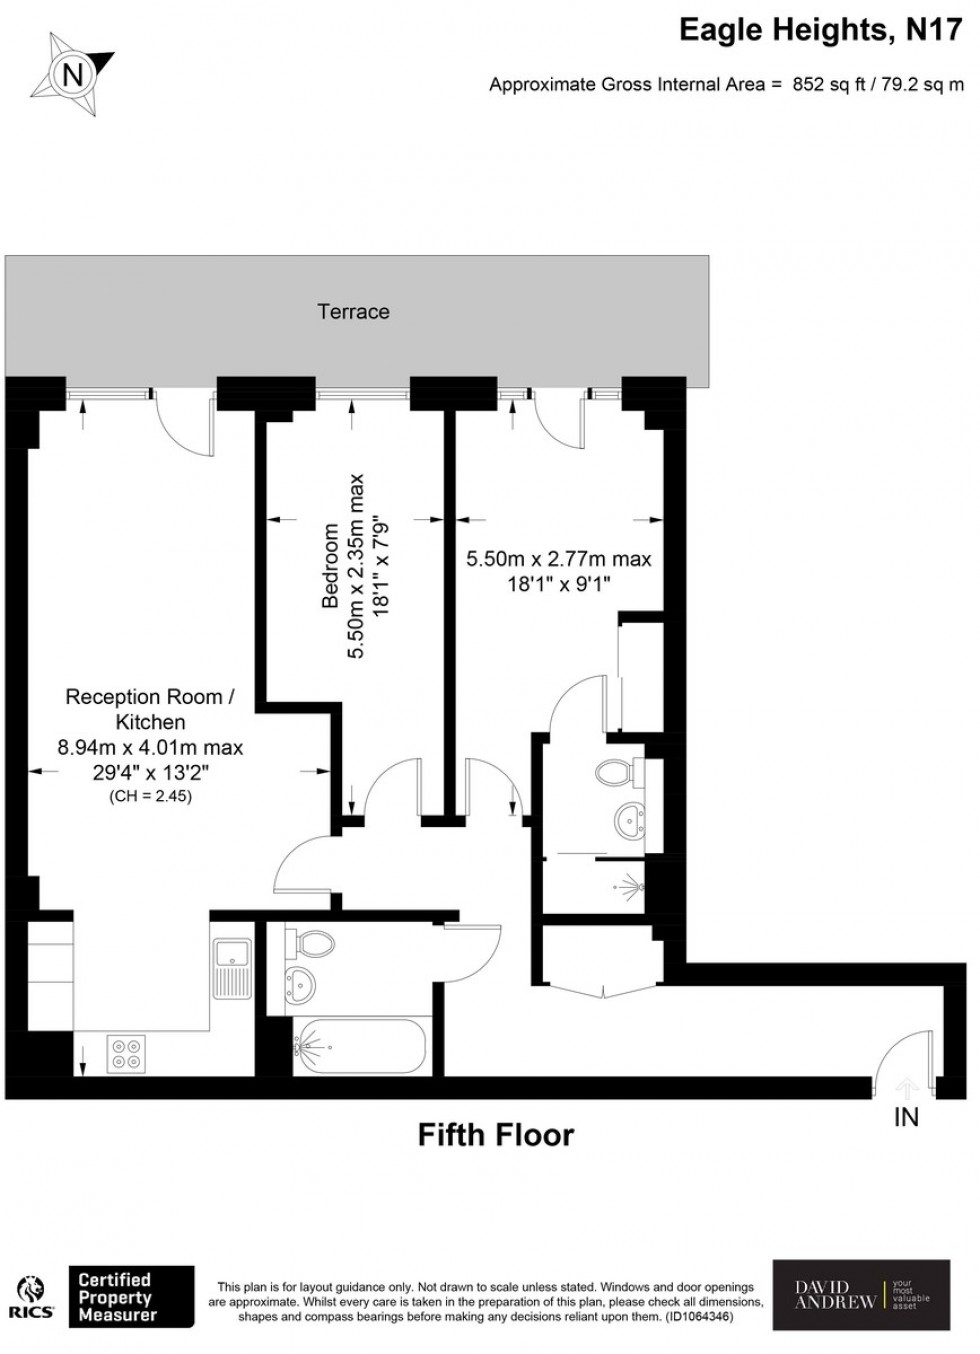 Floorplan for Eagle Heights Waterside Way, N17 9QQ